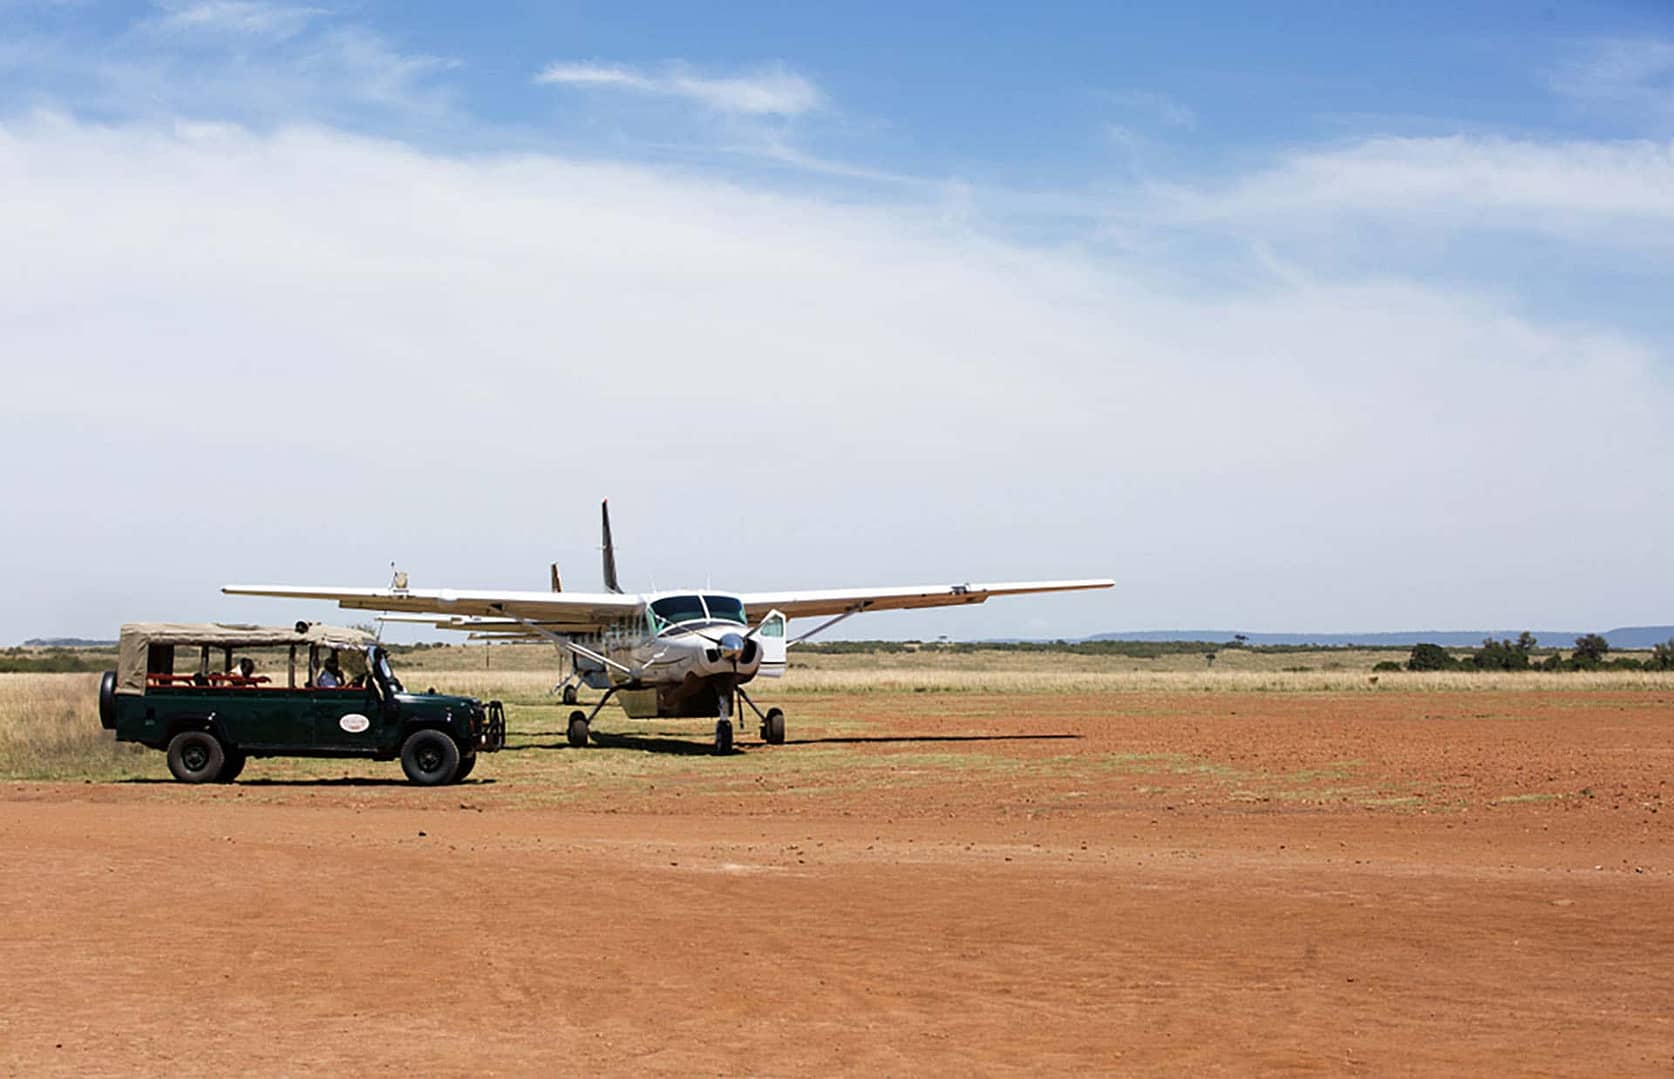 Elewana Skysafaris in Kenya